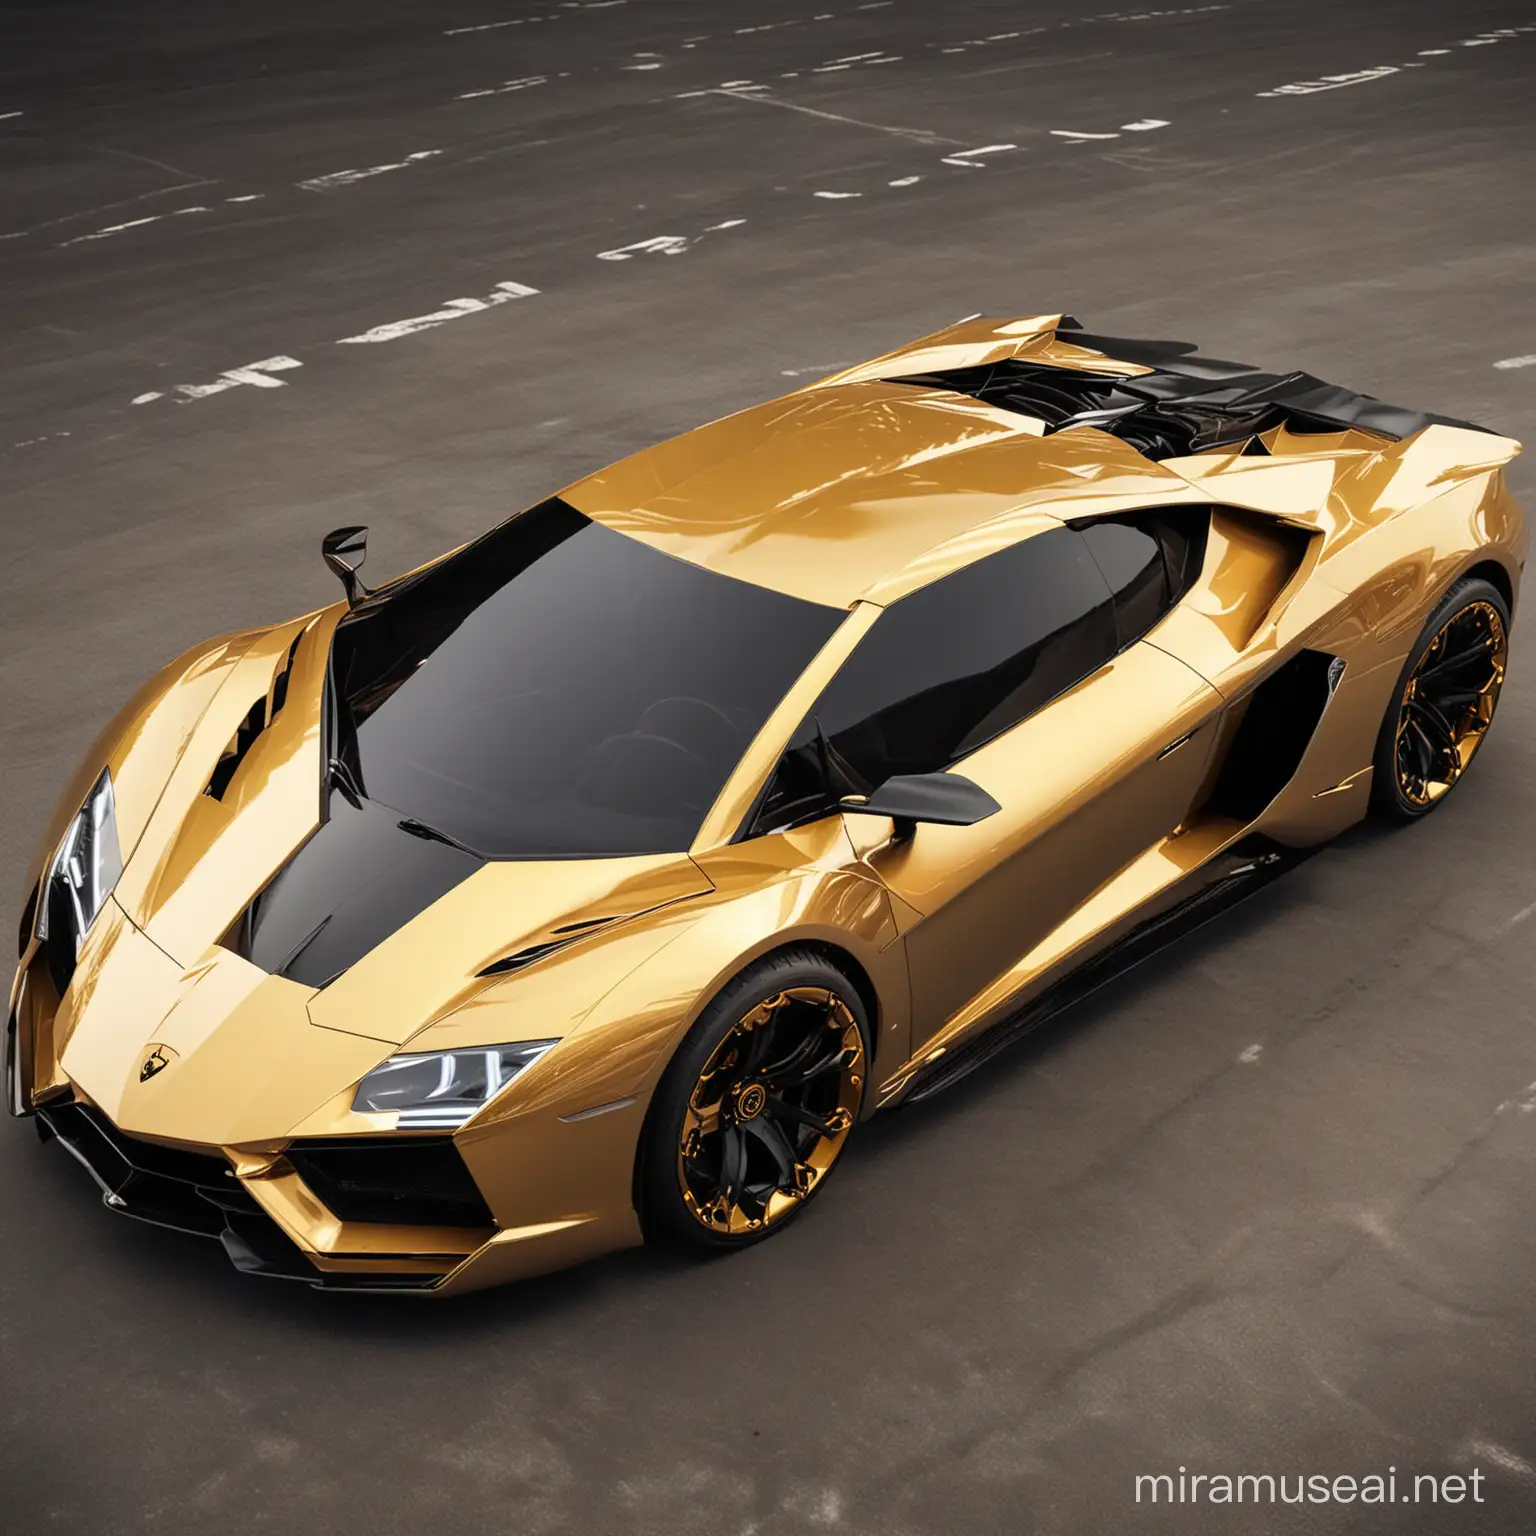 Un concept di macchina Lamborghini molto futuristica, di colore oro con decorazioni nere